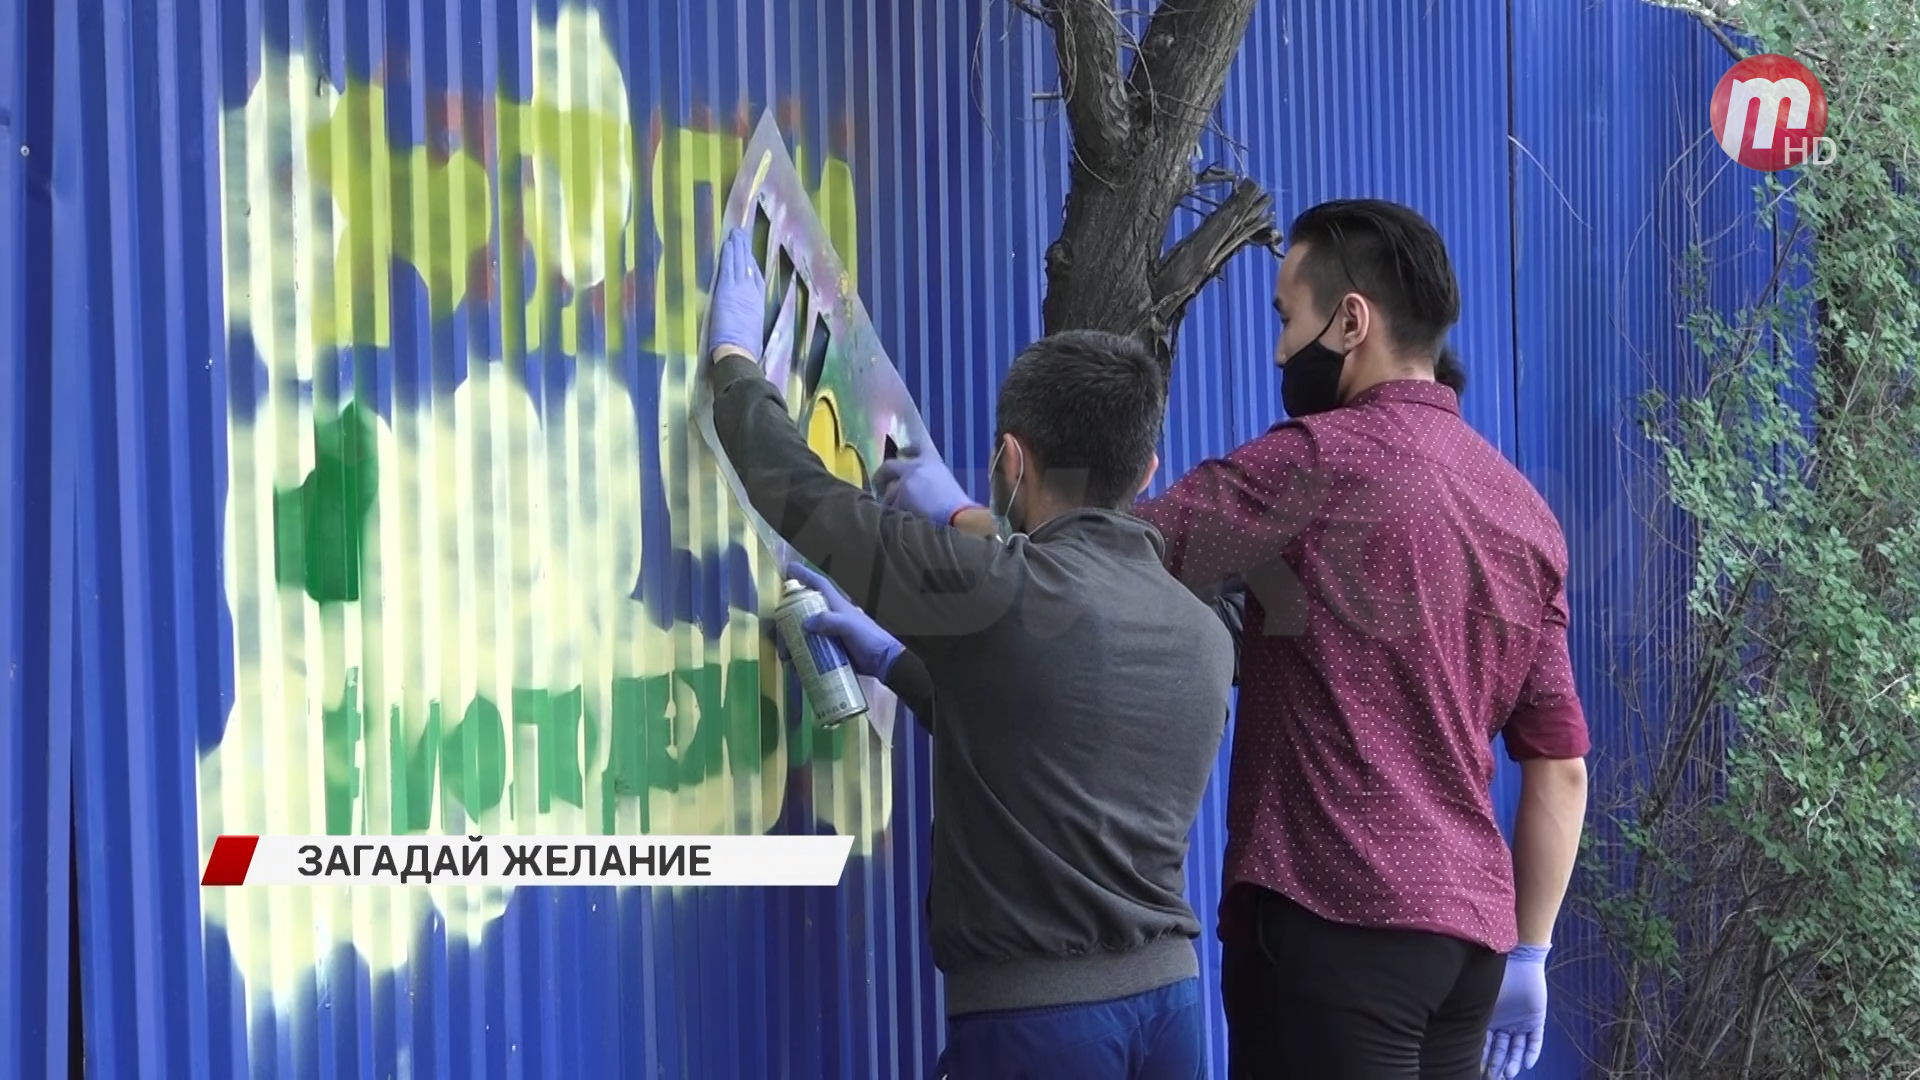 В Улан-Удэ специалисты решили начать ликвидацию рекламы запрещенных веществ на улицах города